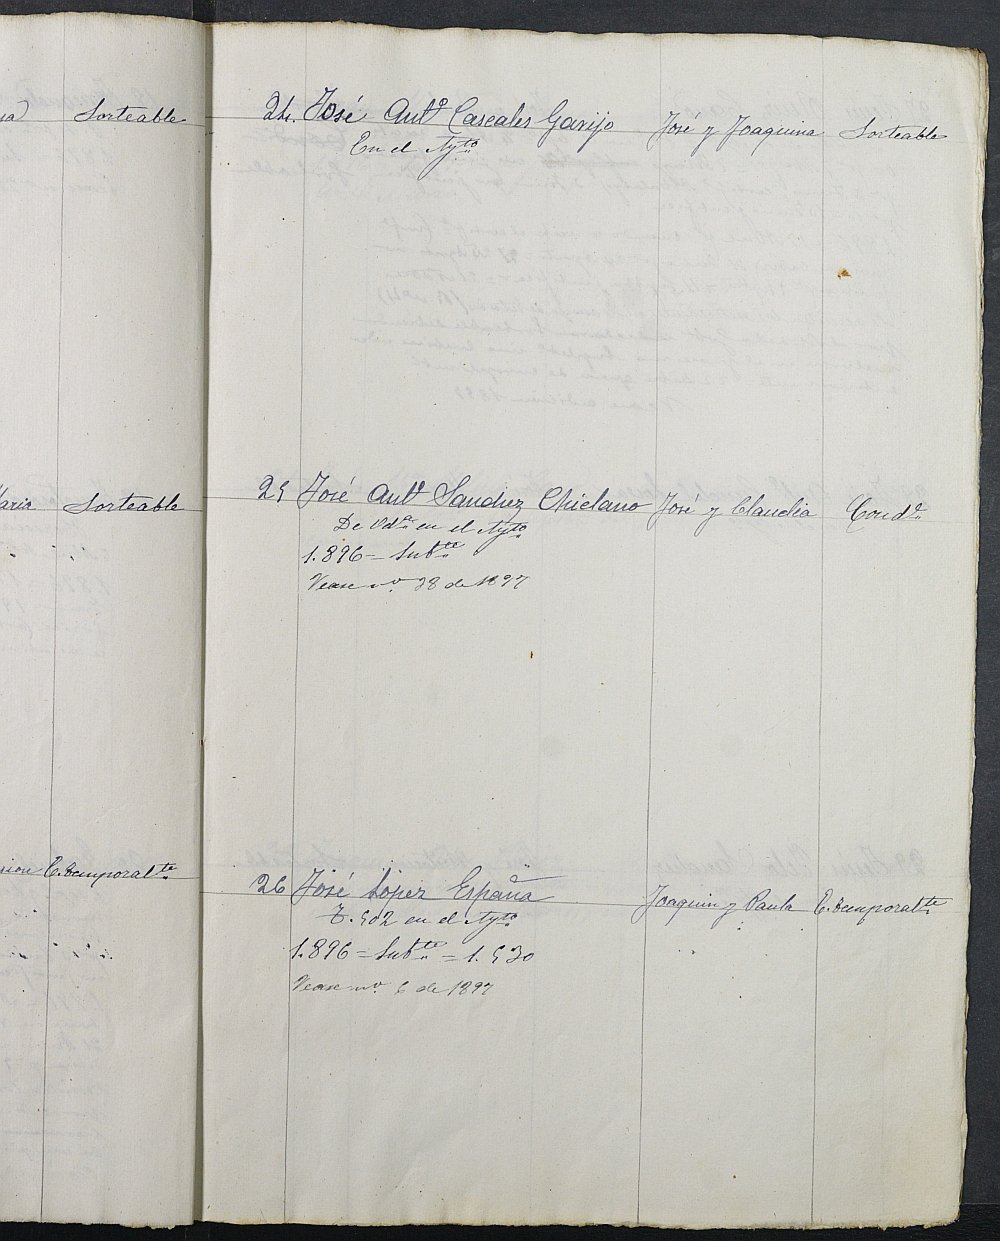 Relación de individuos declarados soldados e ingresados en Caja del Ayuntamiento de Blanca de 1895.